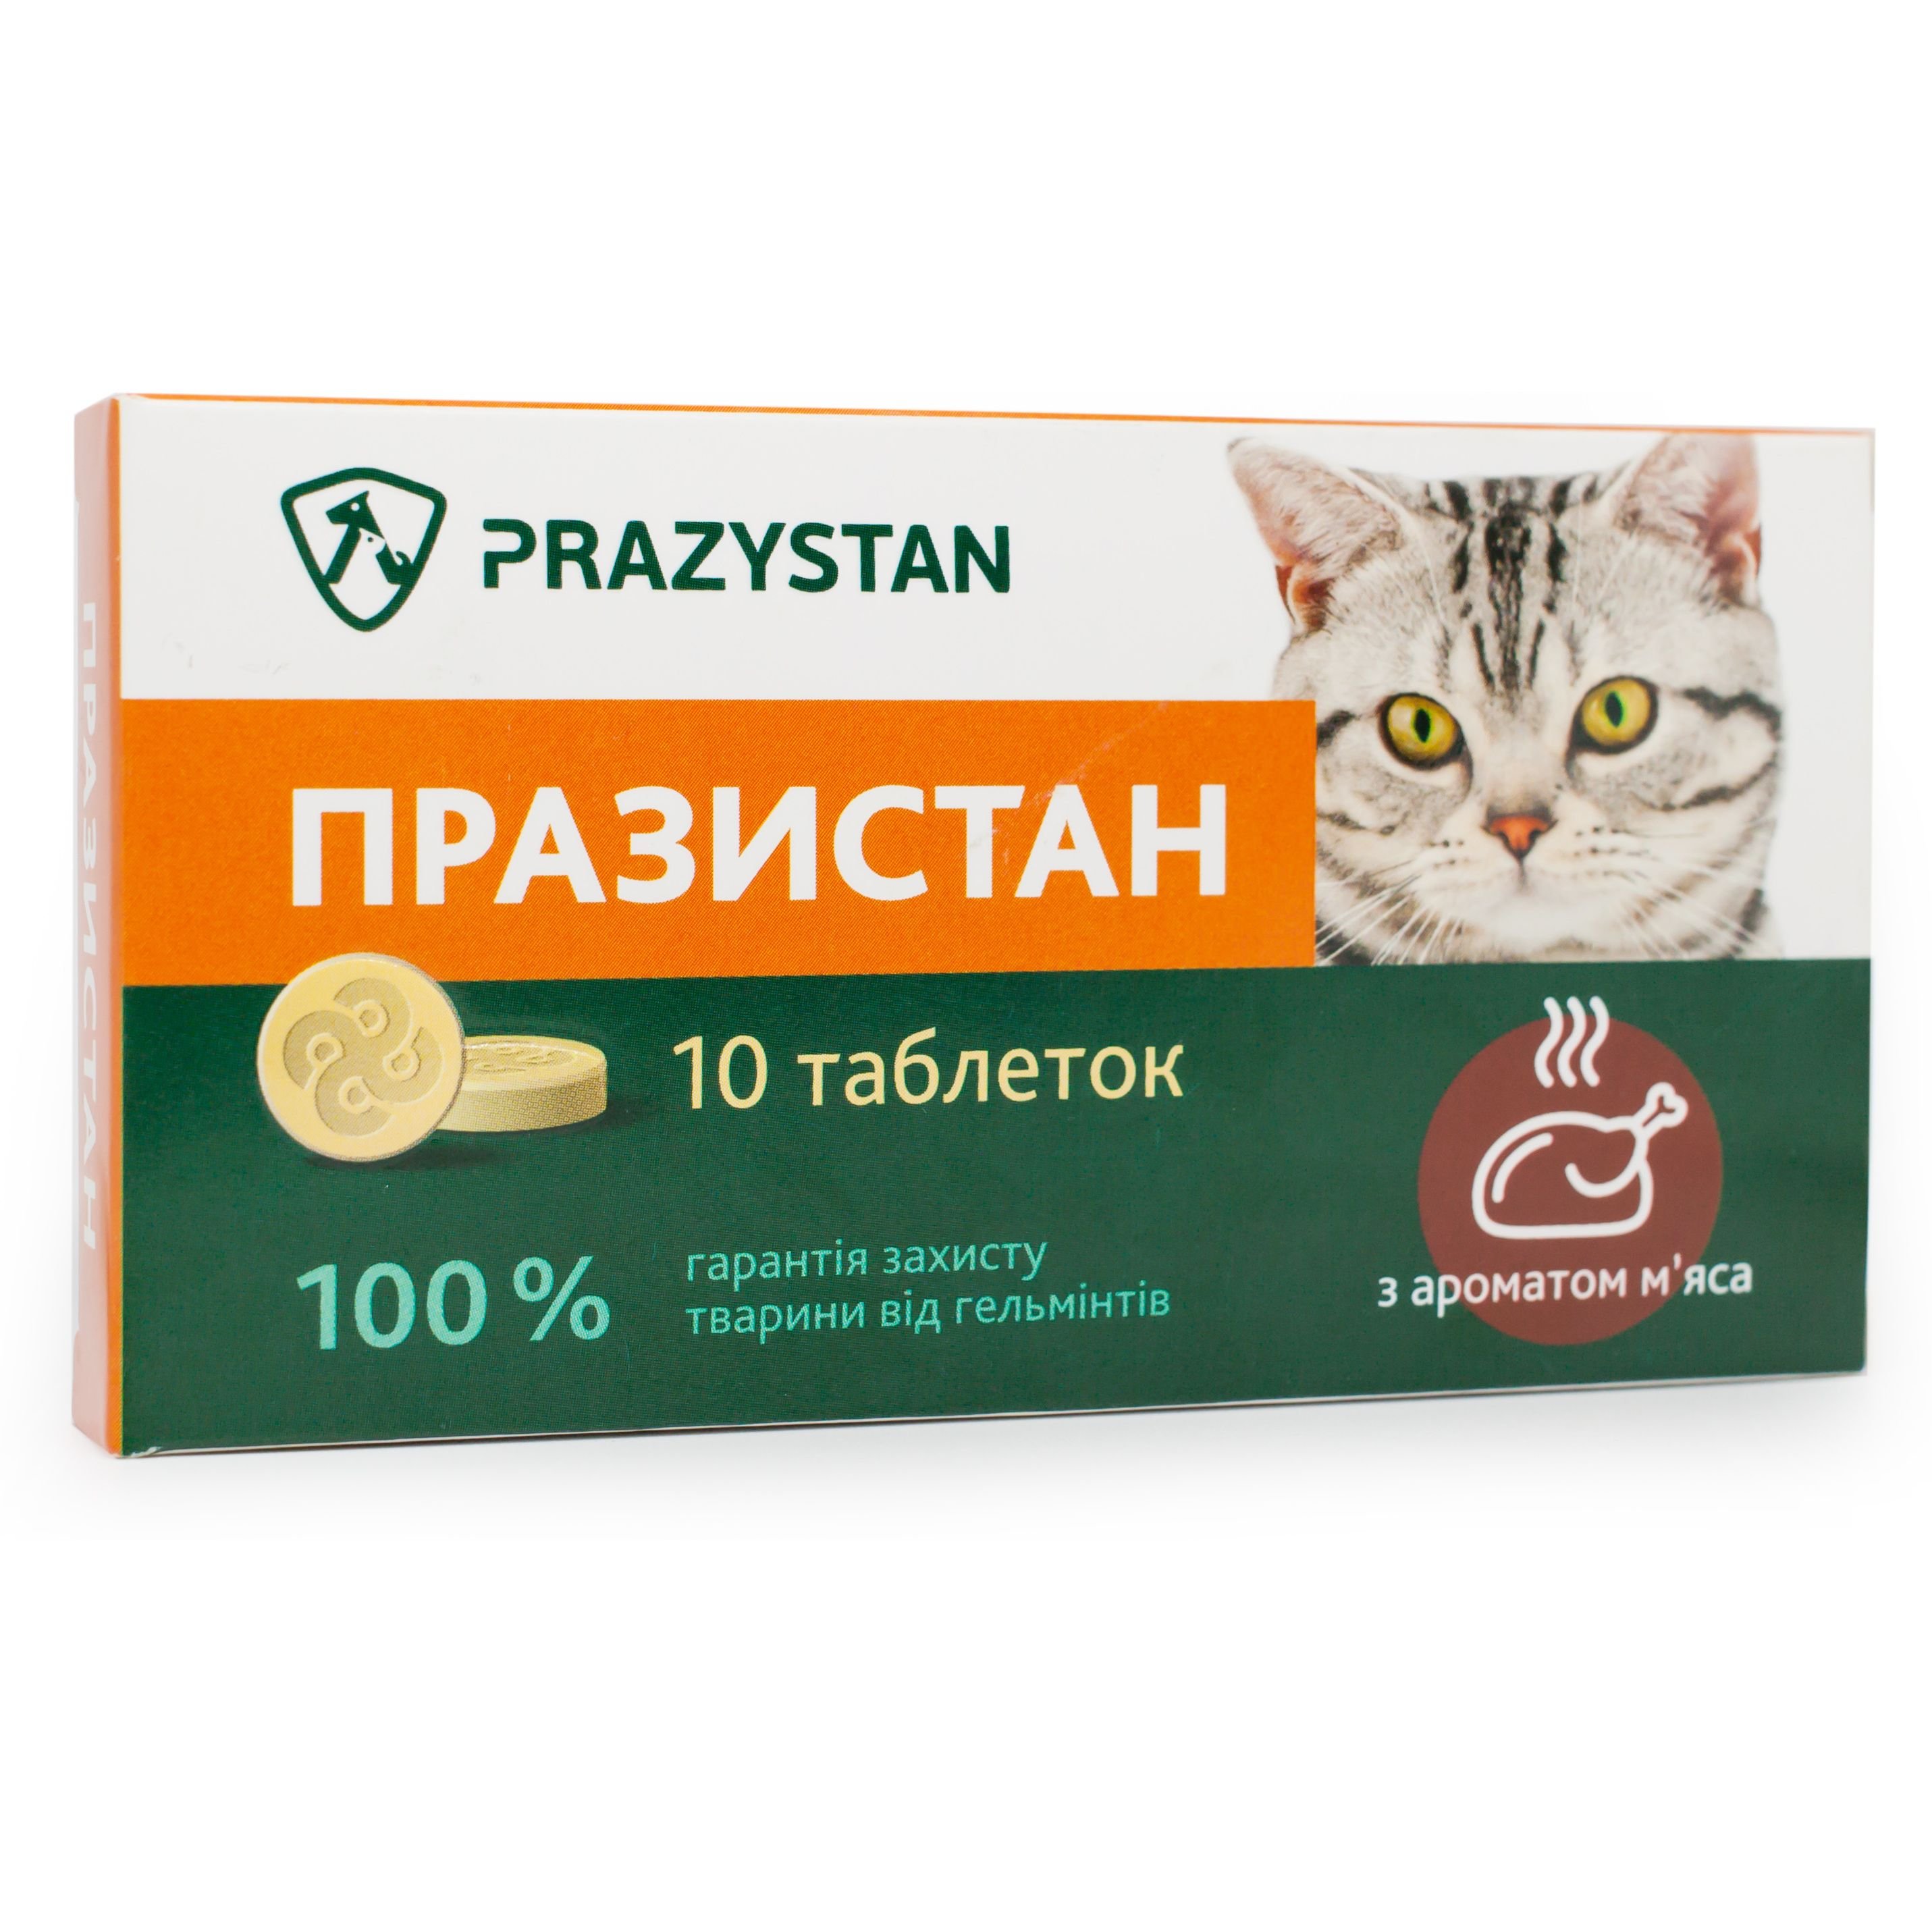 Антигельминтные таблетки Vitomax Празистан для кошек с ароматом мяса, 10 таблеток - фото 2